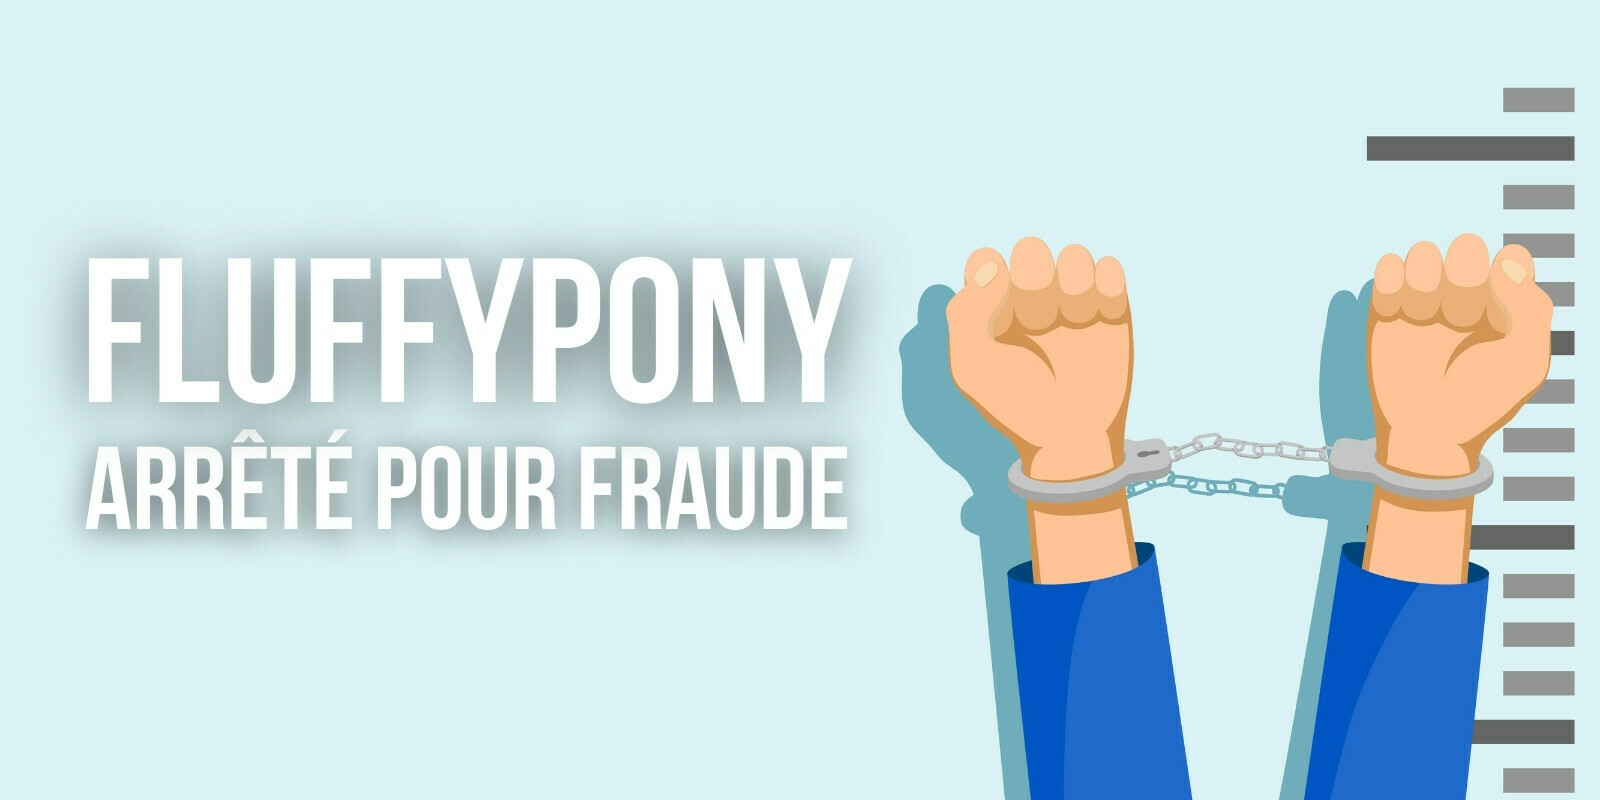 L’ancien développeur principal de Monero (XMR) Fluffypony a été arrêté pour fraude